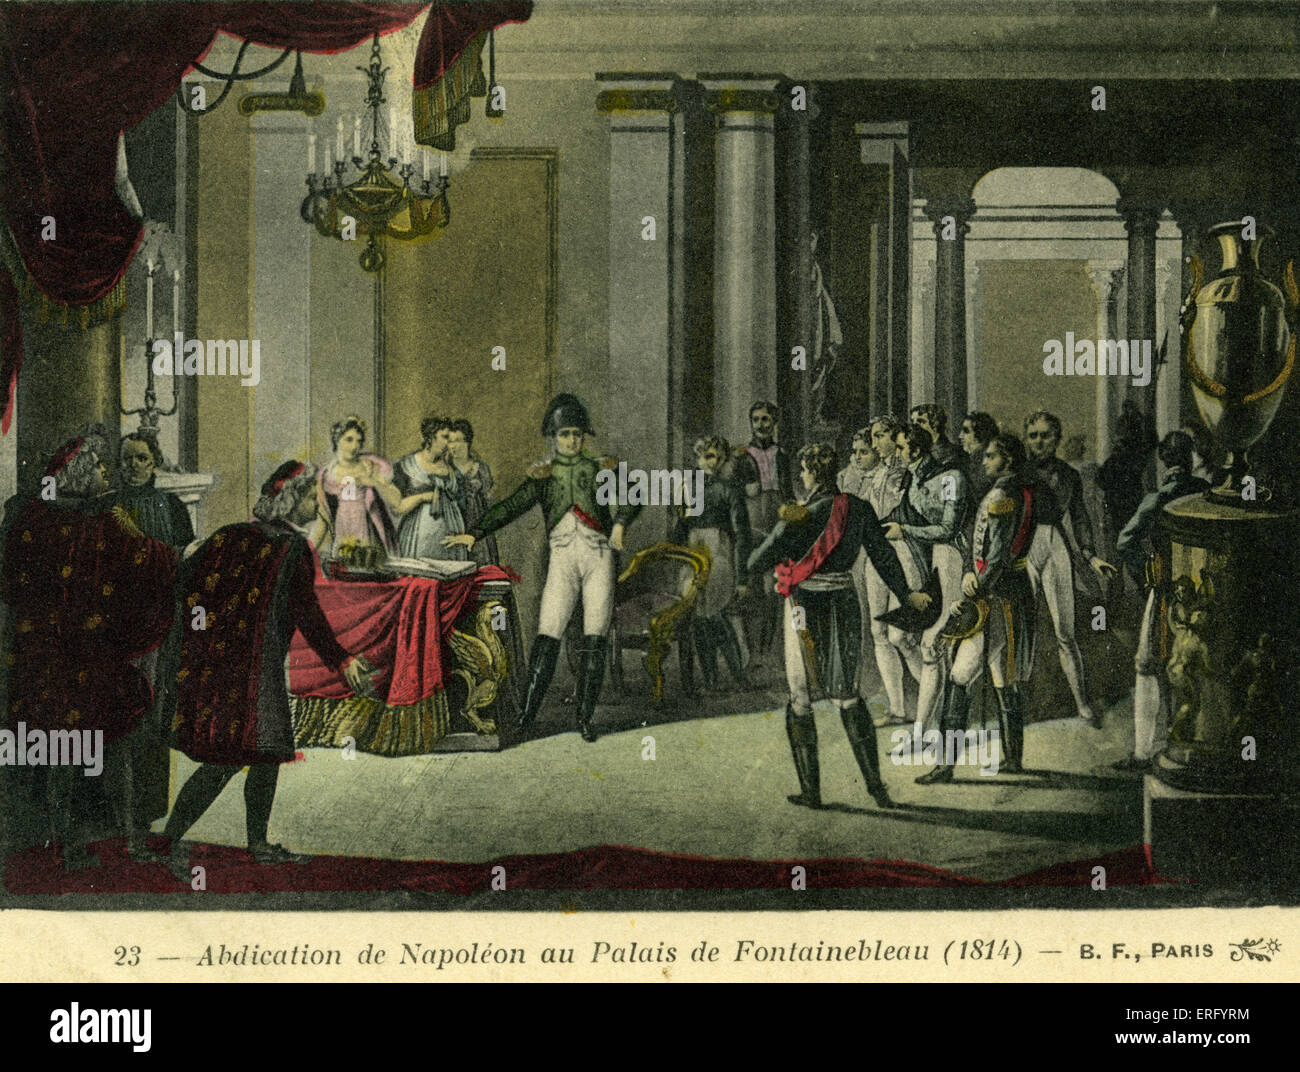 Abdication de Napoléon au Palais de Fontainebleau en 1814. Traité de Fontainebleau - entente conclue le 11 avril 1814 Banque D'Images